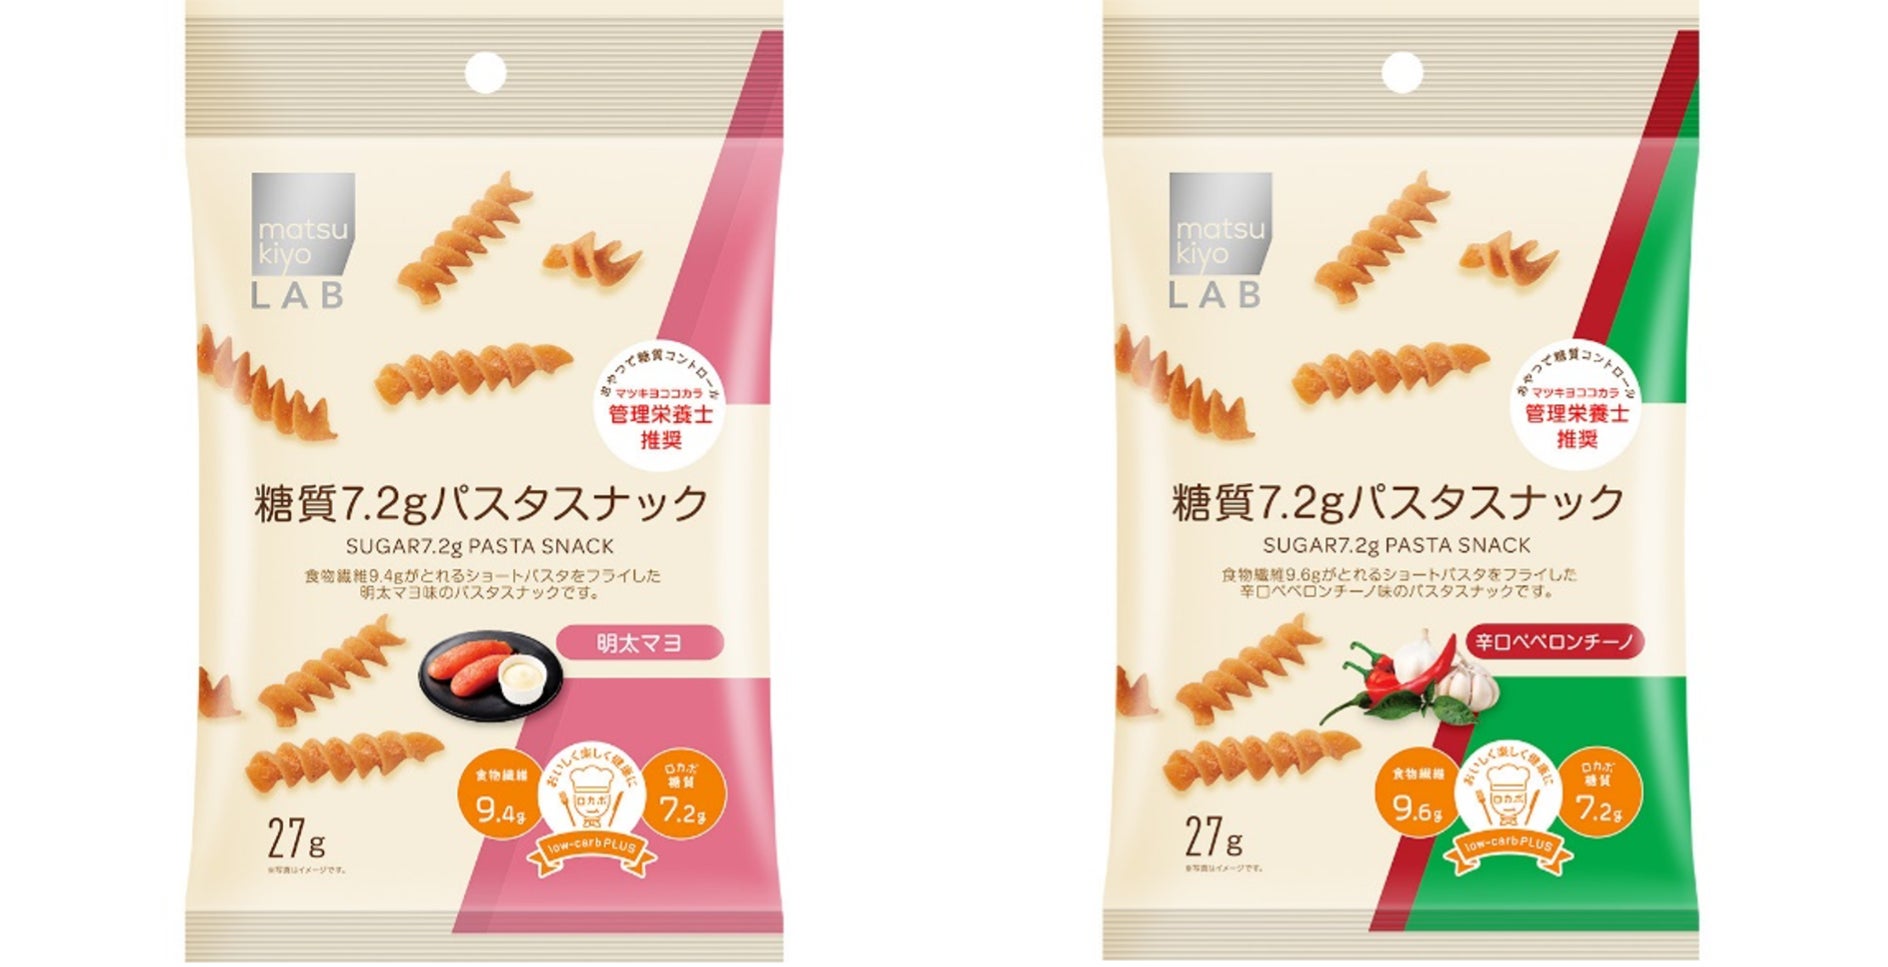 matsukiyo LABの「サステナブルロカボライン」から低糖質でも食べ応え十分な“濃厚味”の新フレーバー「パスタスナック」2種　5月11日より販売開始